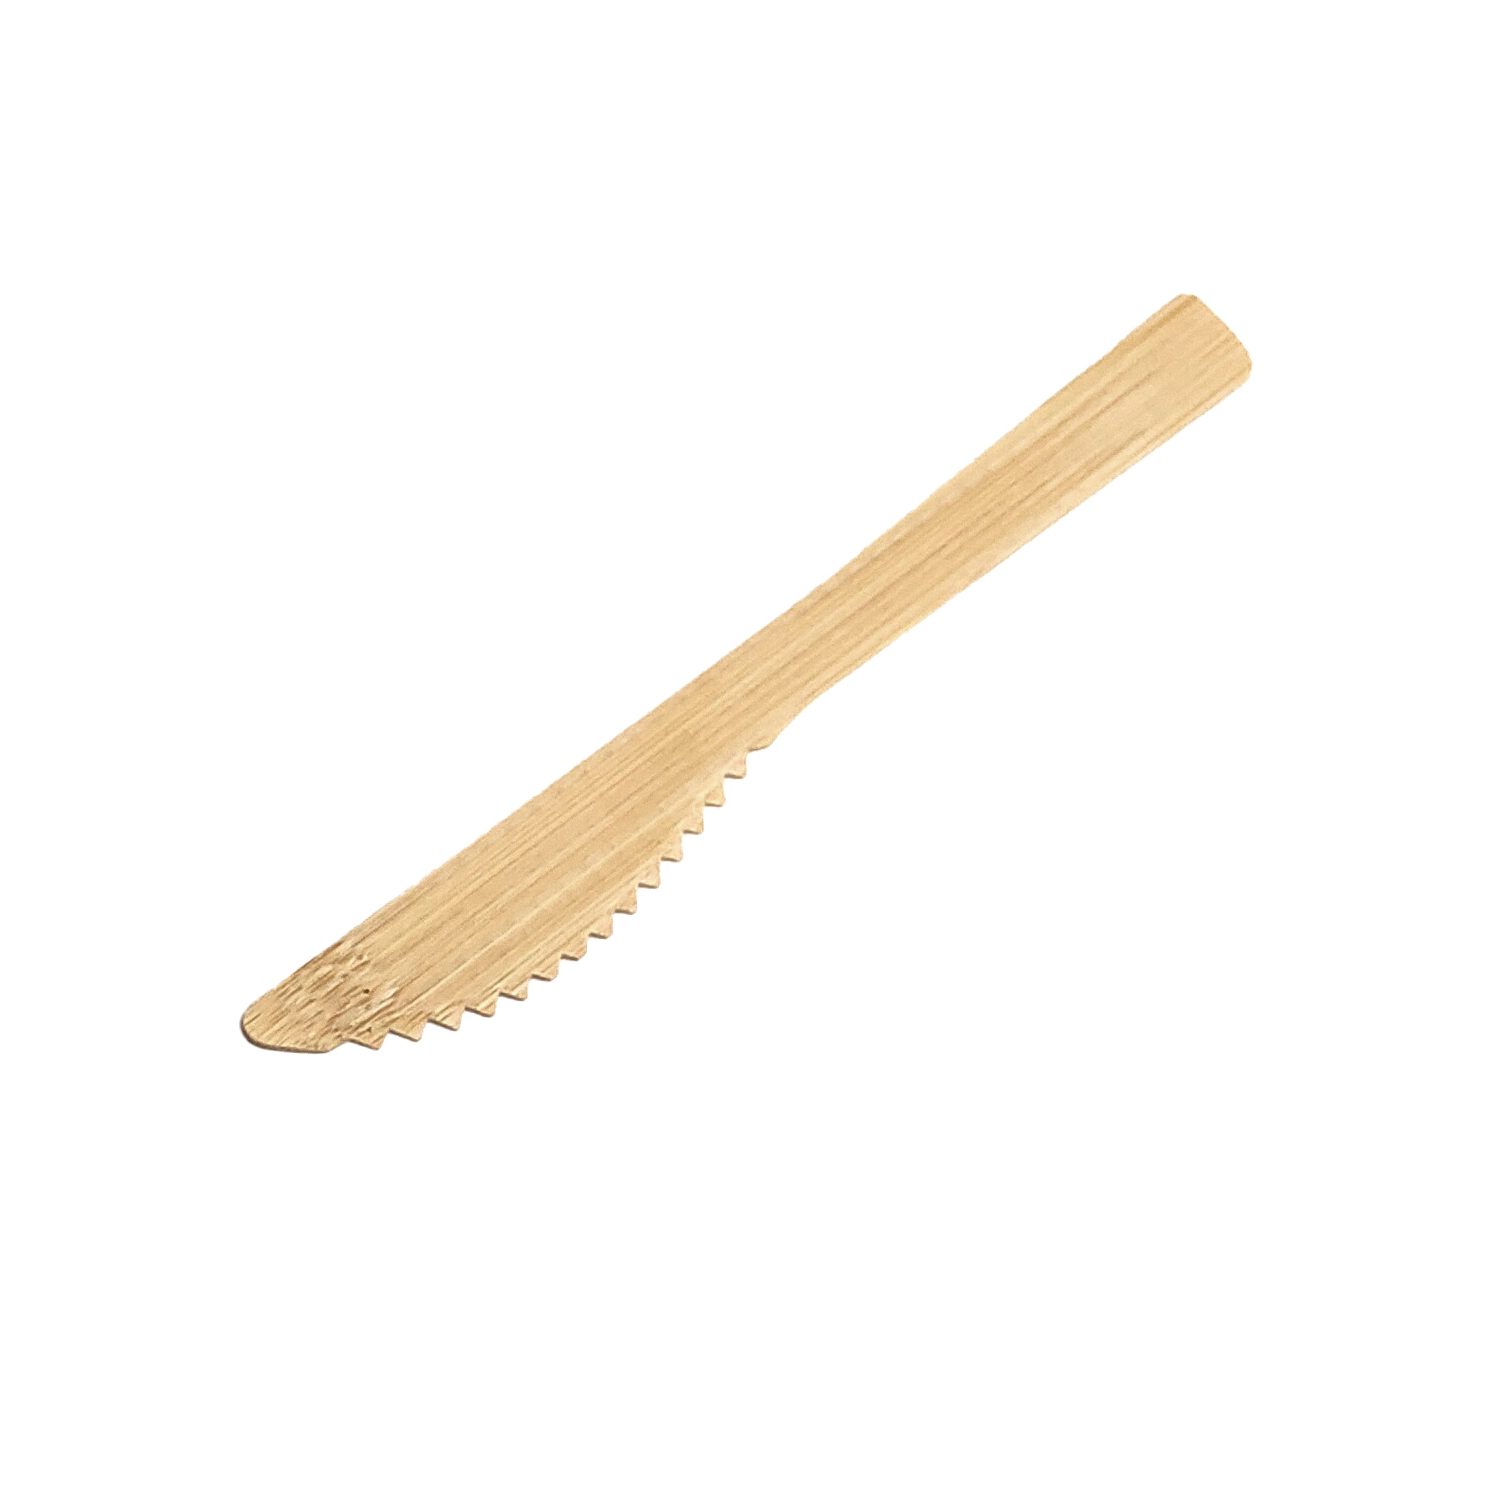 170 mm-es komposztálható Eco kés és villa alakú eldobható bambusz evőeszköz szalvétával